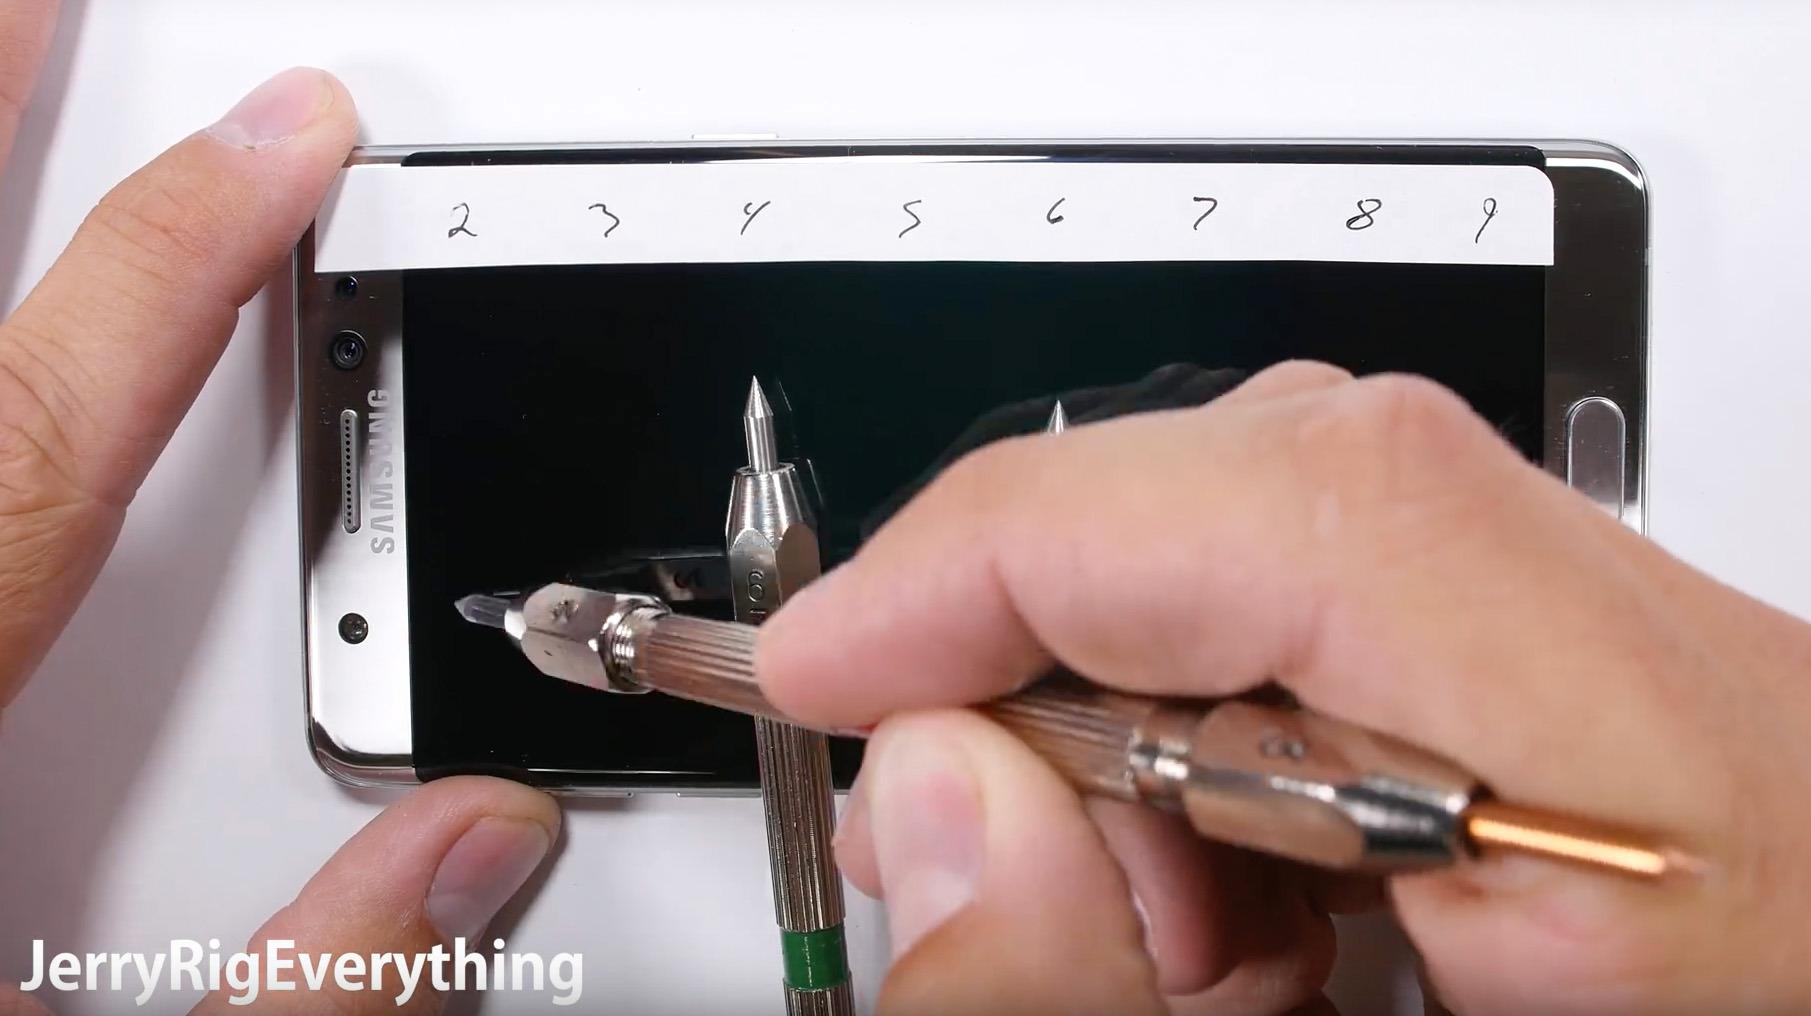 Ifølge YouTube-kanalen JerryRigEverything er det lett å lage riper i skjermen til Samsung Galaxy Note 7.